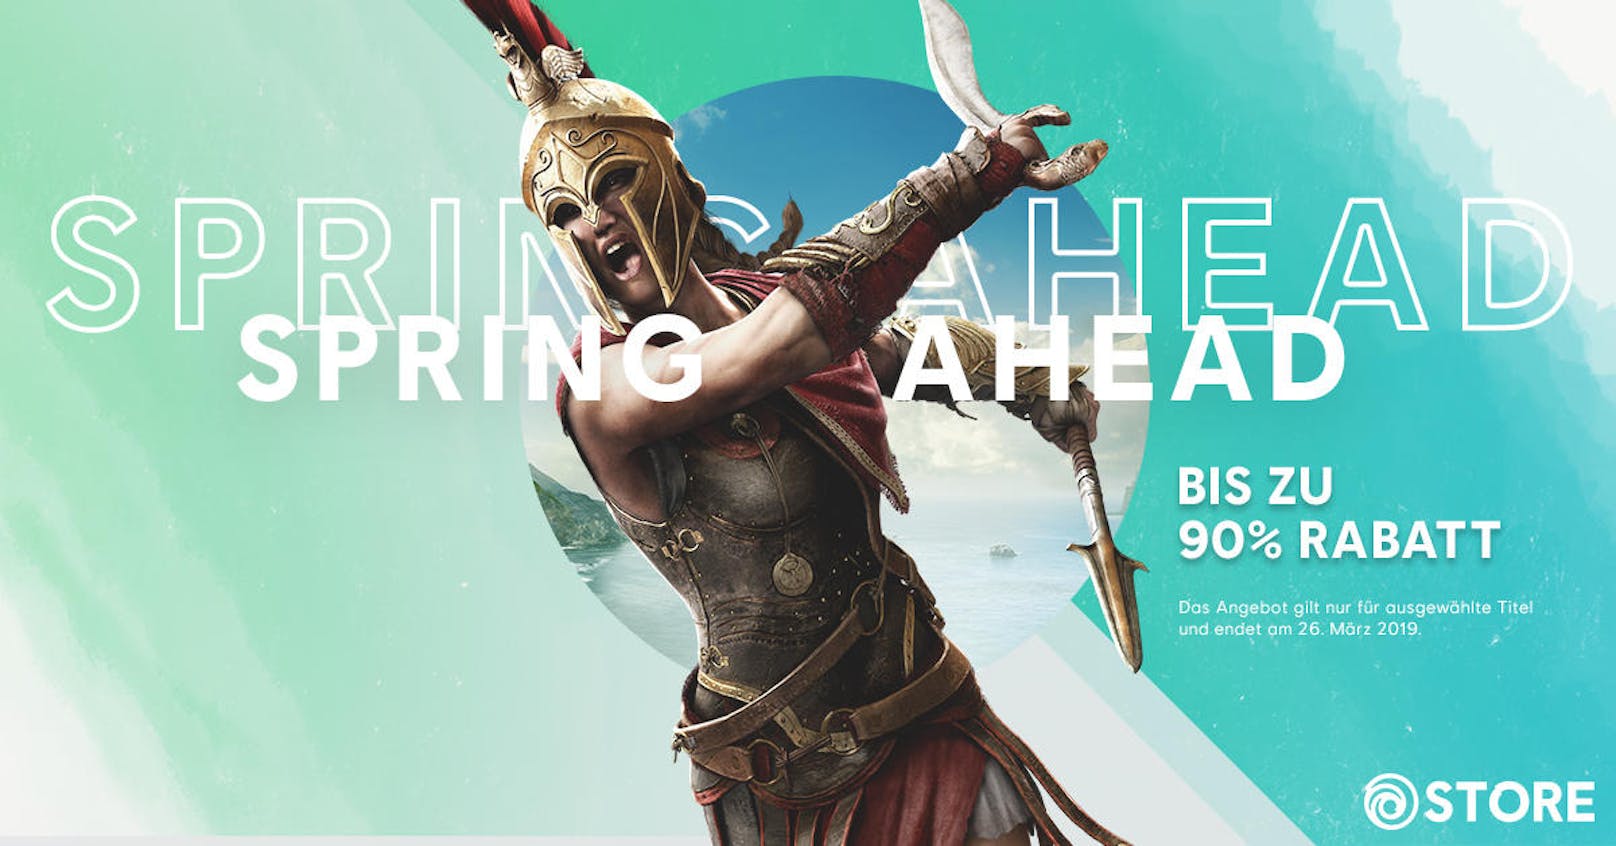 <b>15. März 2019:</b> Bei Ubisoft läuft derzeit der Spring Sale im Ubisoft Store. Bis zum 26. März um 11 Uhr gibt es die Möglichkeit, aktuelle Ubisoft-Titel mit einer Preisersparnis von bis zu 90 Prozent zu erwerben. Neben Spielen wie Assassin's Creed Odyssey (bis zu 50% Rabatt), Far Cry 5 (bis zu 67% Rabatt) und der Siedler History Collection (50% Rabatt) werden auch kürzlich erschienene Titel, wie Far Cry New Dawn (bis zu 50% Rabatt) und Trials Rising (bis zu 25% Rabatt) im Sale zu finden sein. <a href="https://store.ubi.com/de/spring-sale">Der Spring Sale ist hier erreichbar.</a>